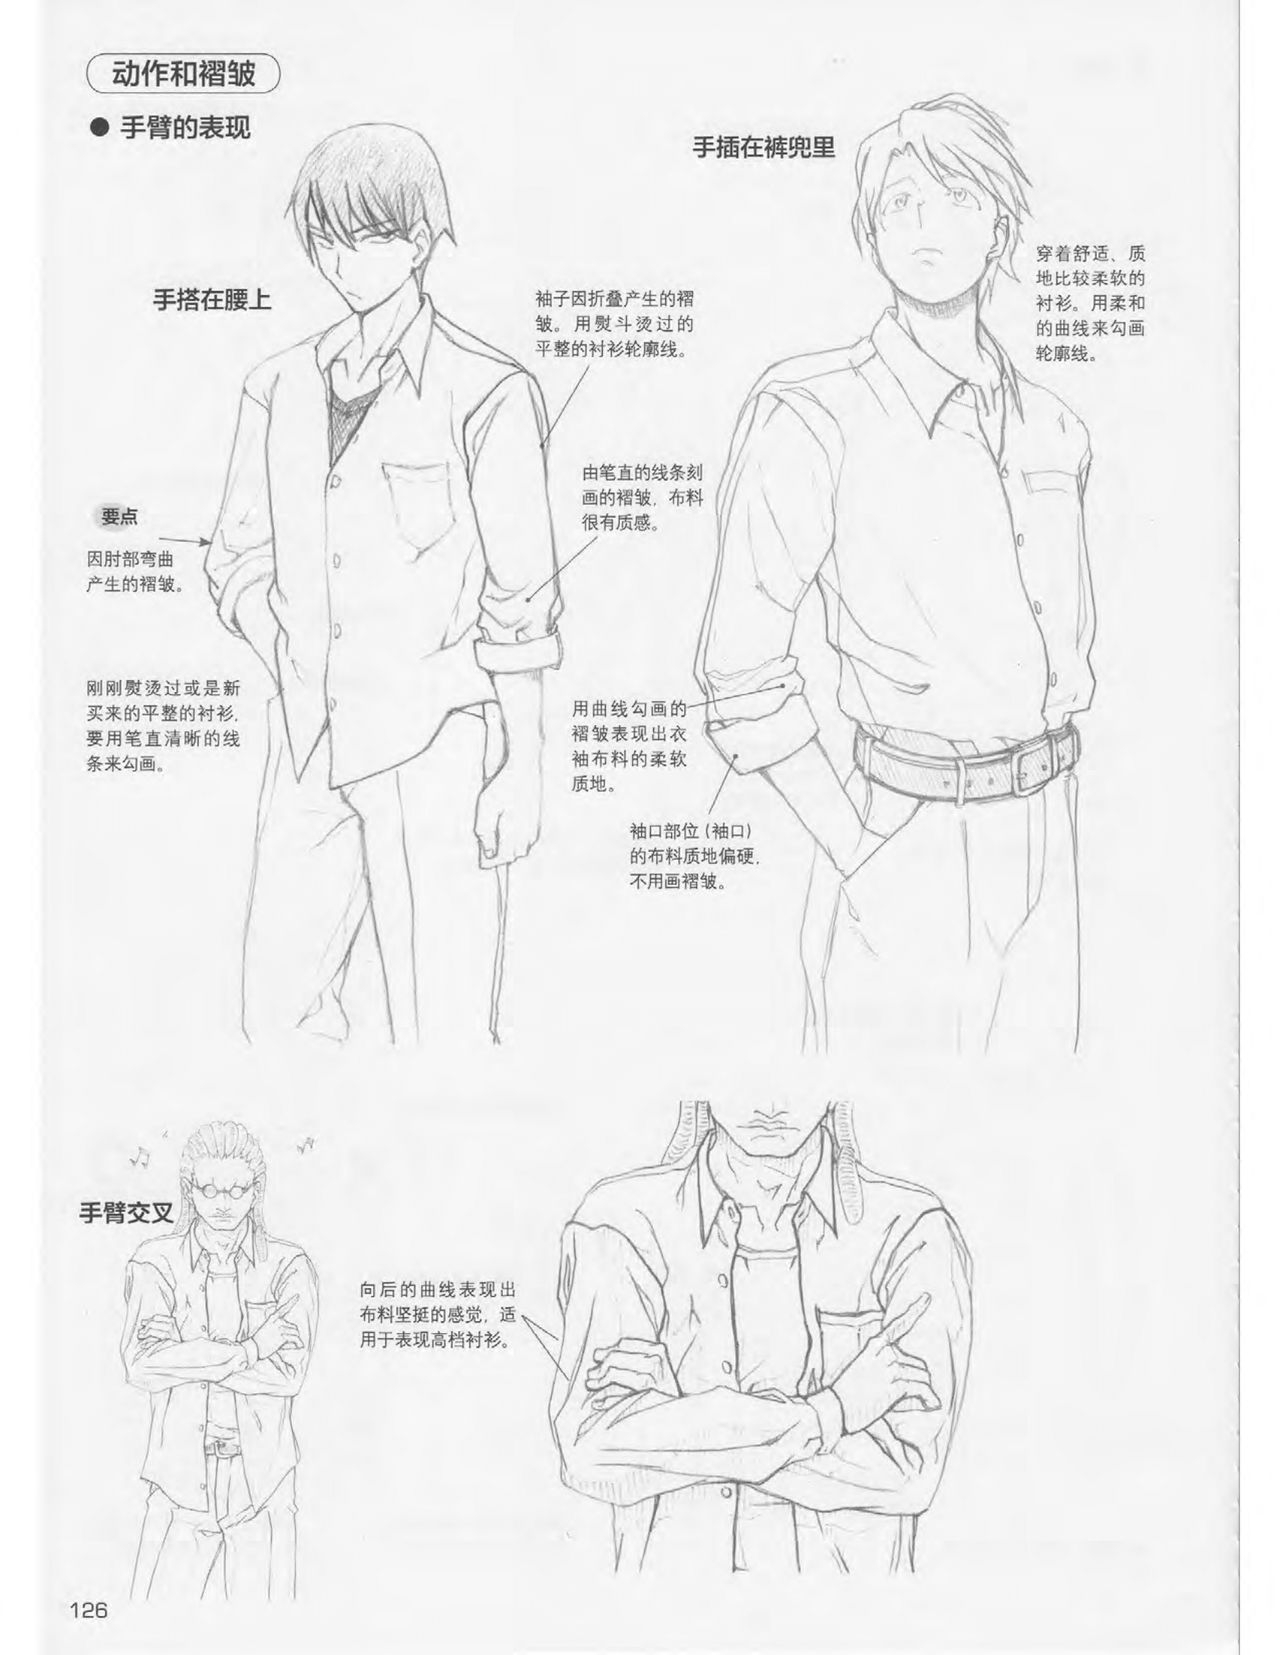 Japanese Manga Master Lecture 3: Lin Akira and Kakumaru Maru Talk About Glamorous Character Modeling 125